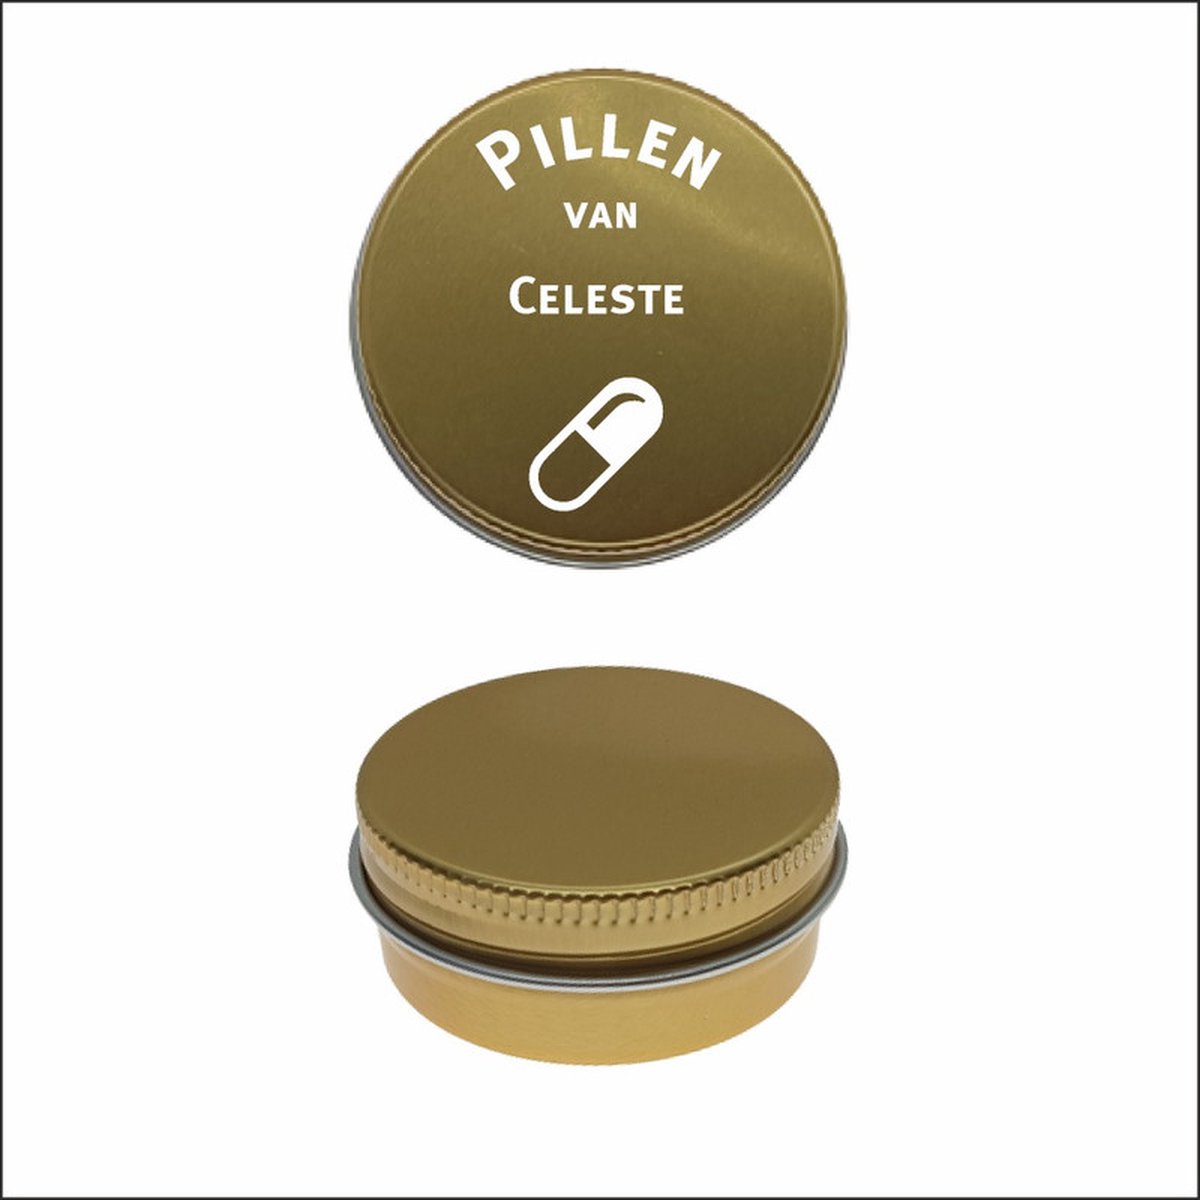 Pillen Blikje Met Naam Gravering - Celeste